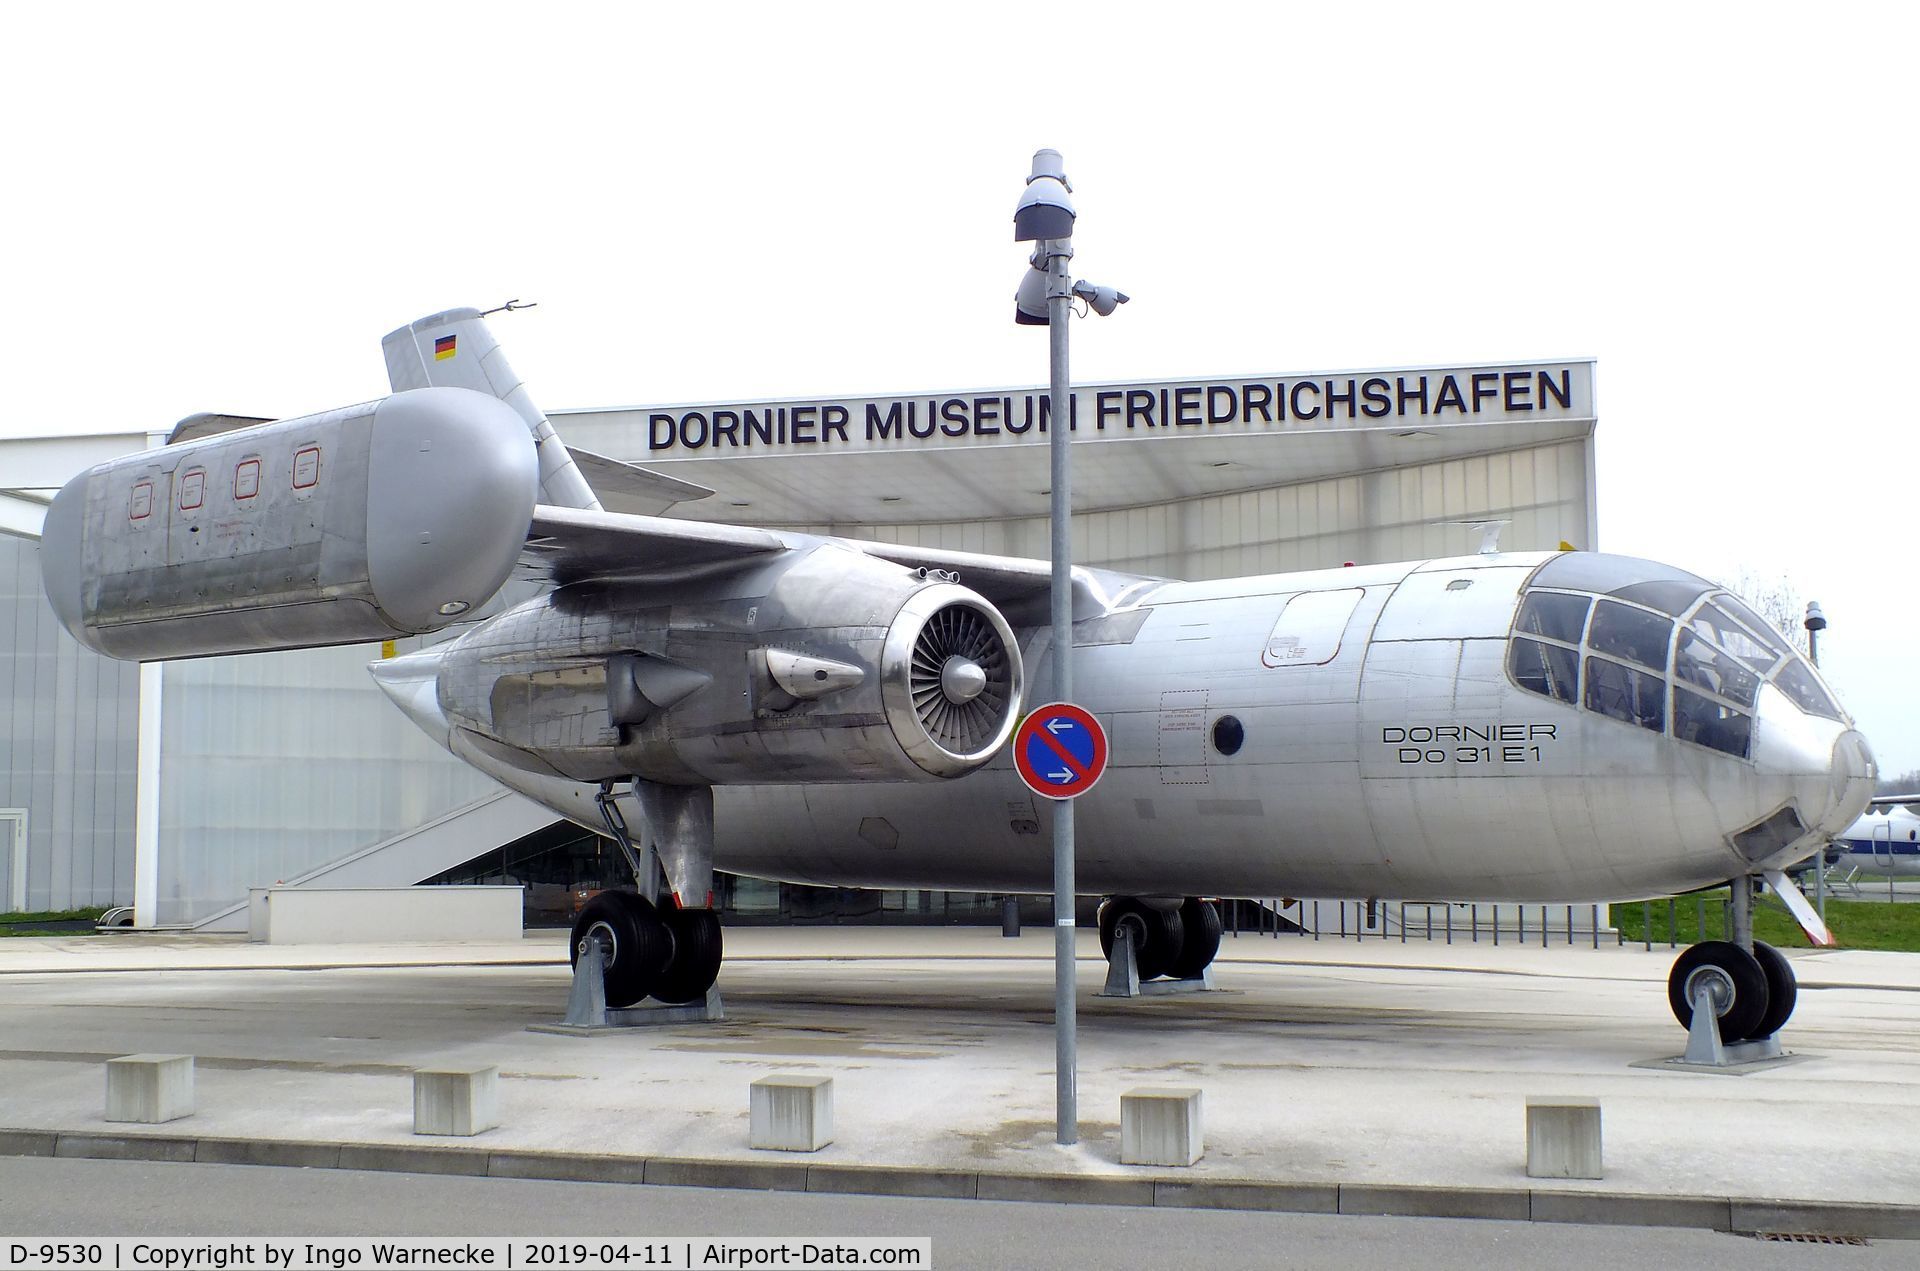 D-9530, 1967 Dornier Do-31 C/N E1, Dornier Do 31 at the Dornier Mus, Friedrichshafen